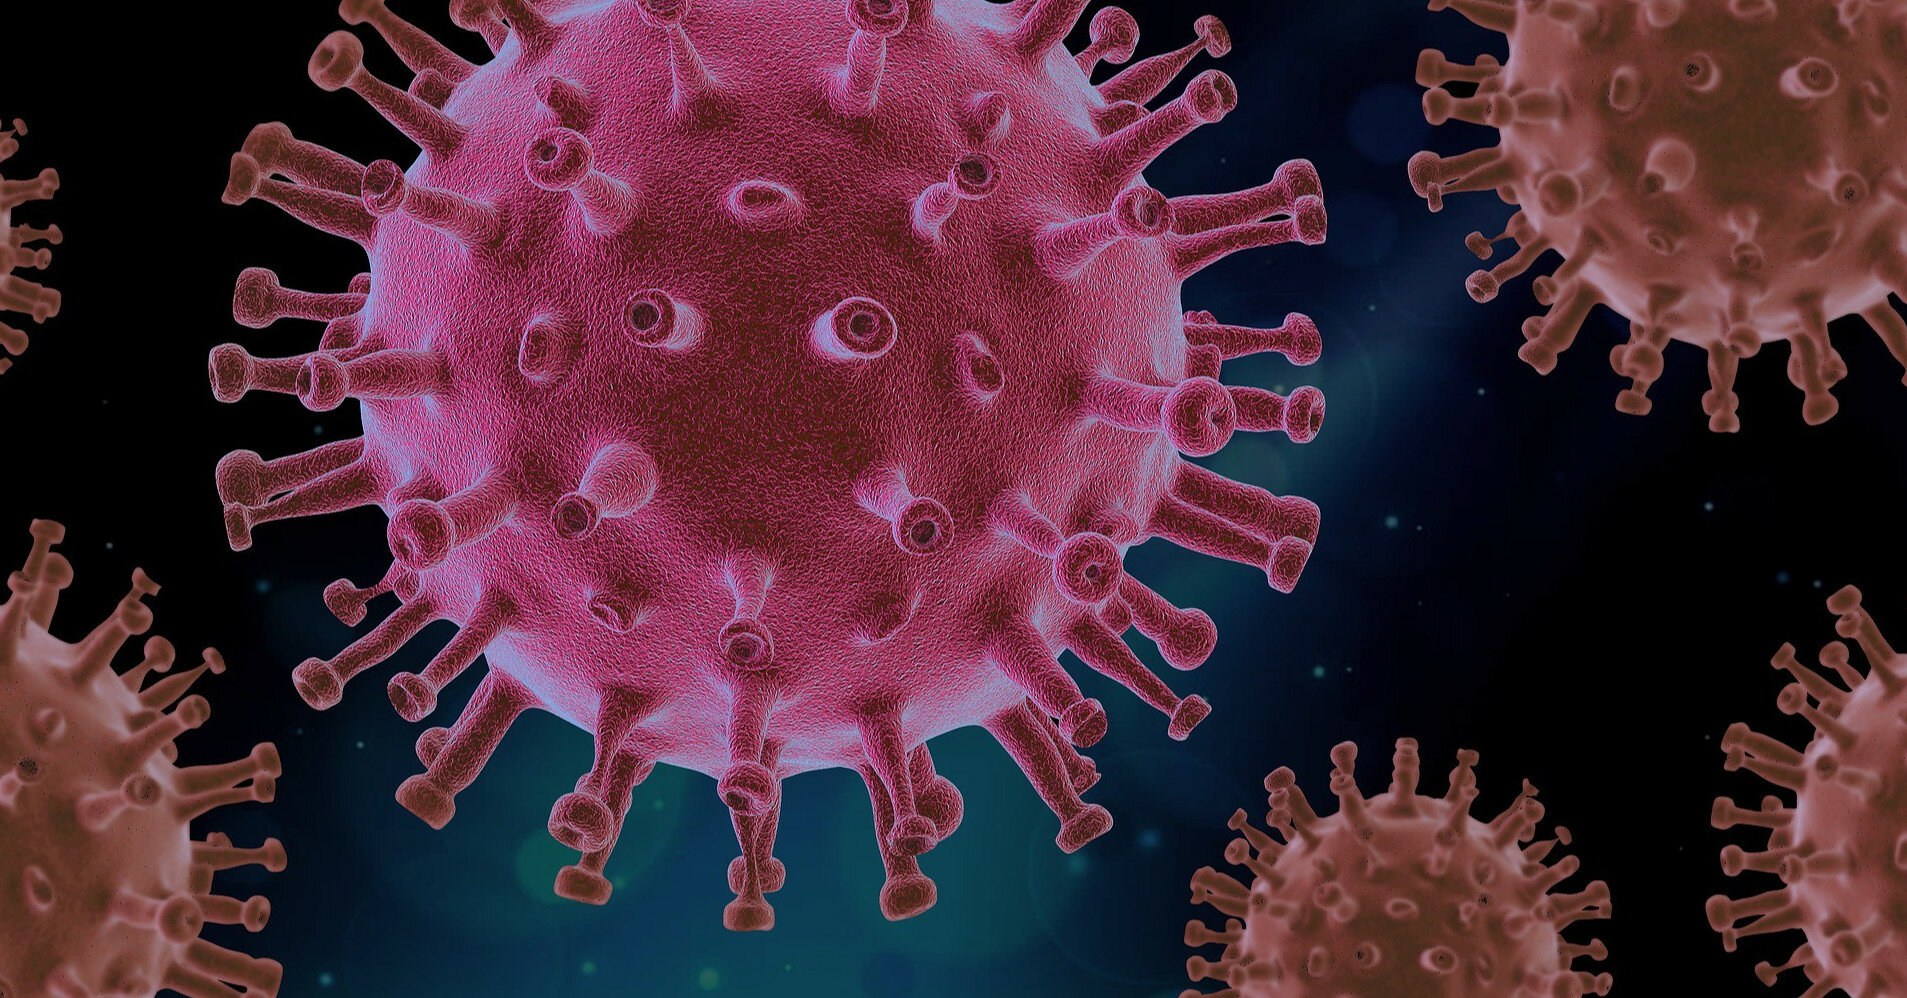 Епідемія коронавируса вразила людство понад 20 тисяч років тому